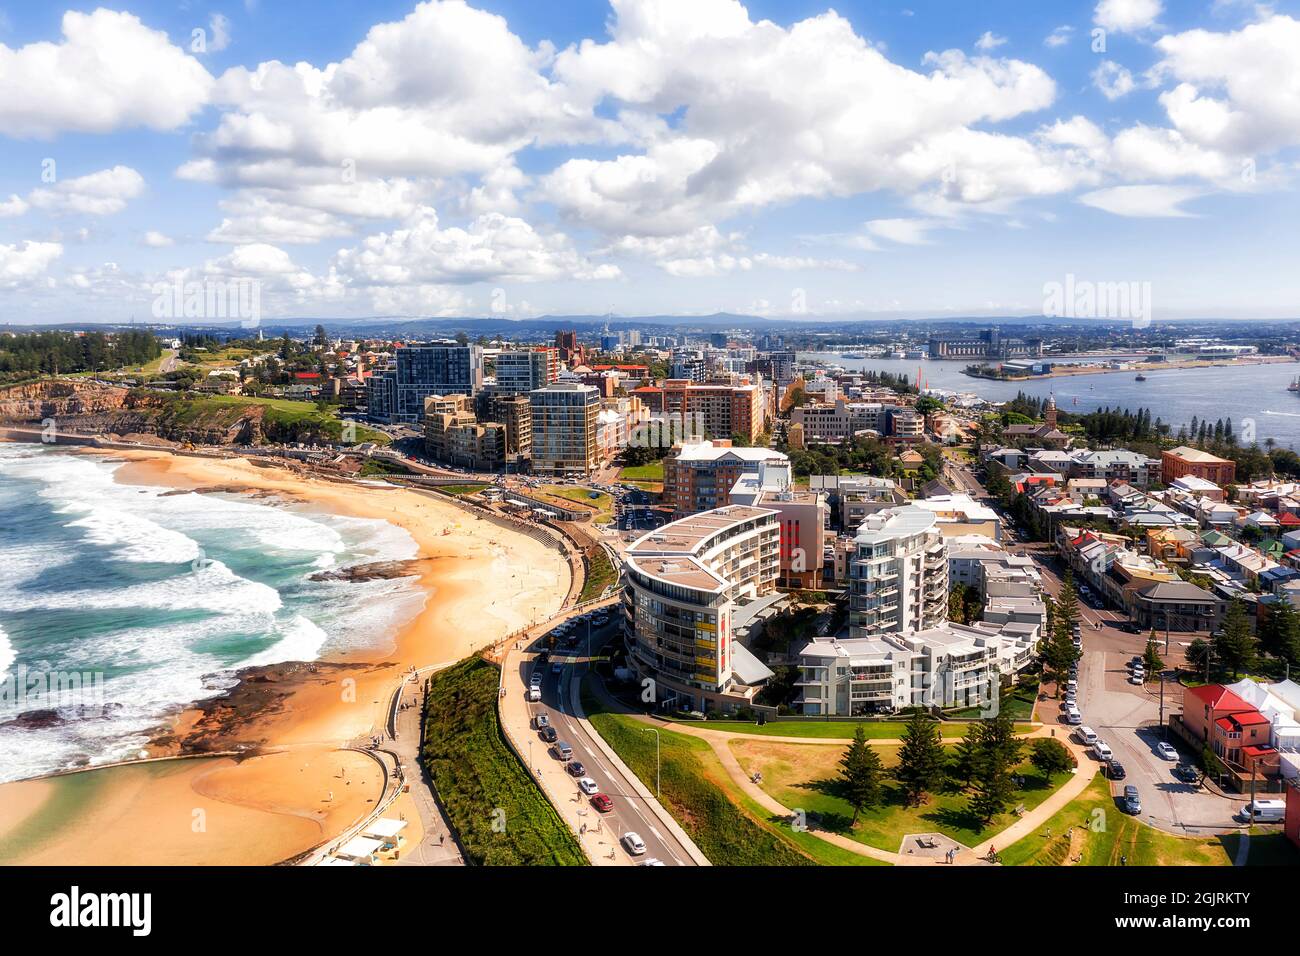 Edifici di appartamenti e case storiche nel CBD della città di Newcastle in Australia sulla costa del Pacifico - vista aerea. Foto Stock